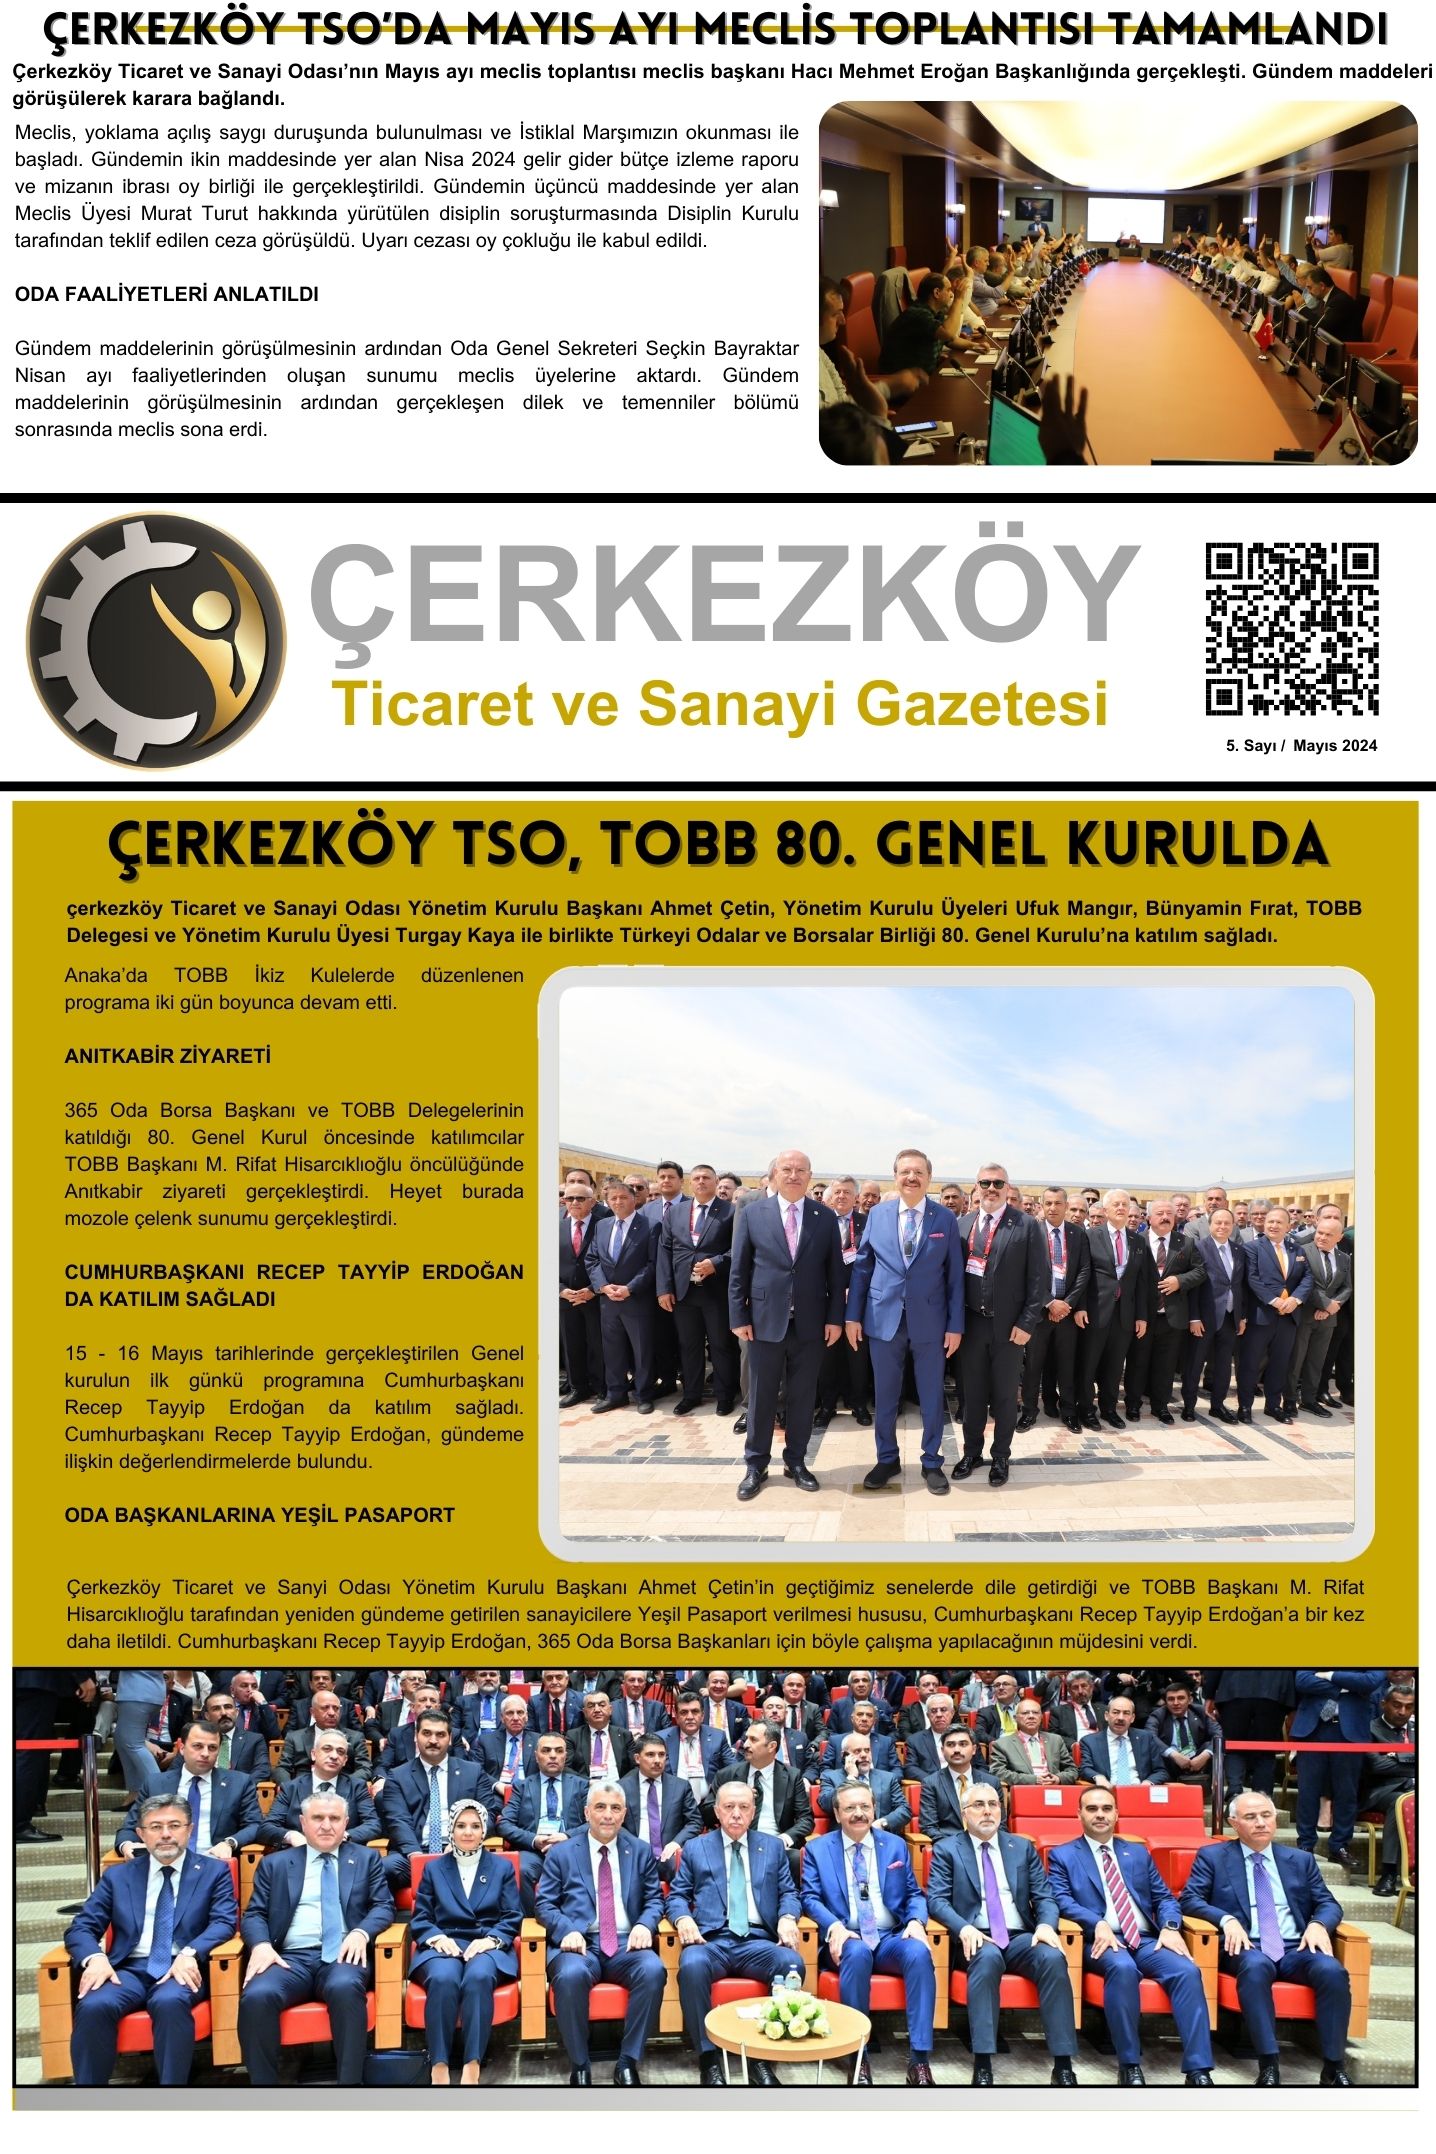 Çerkezköy Ticaret ve Sanayi Gazetesi Sayı 5